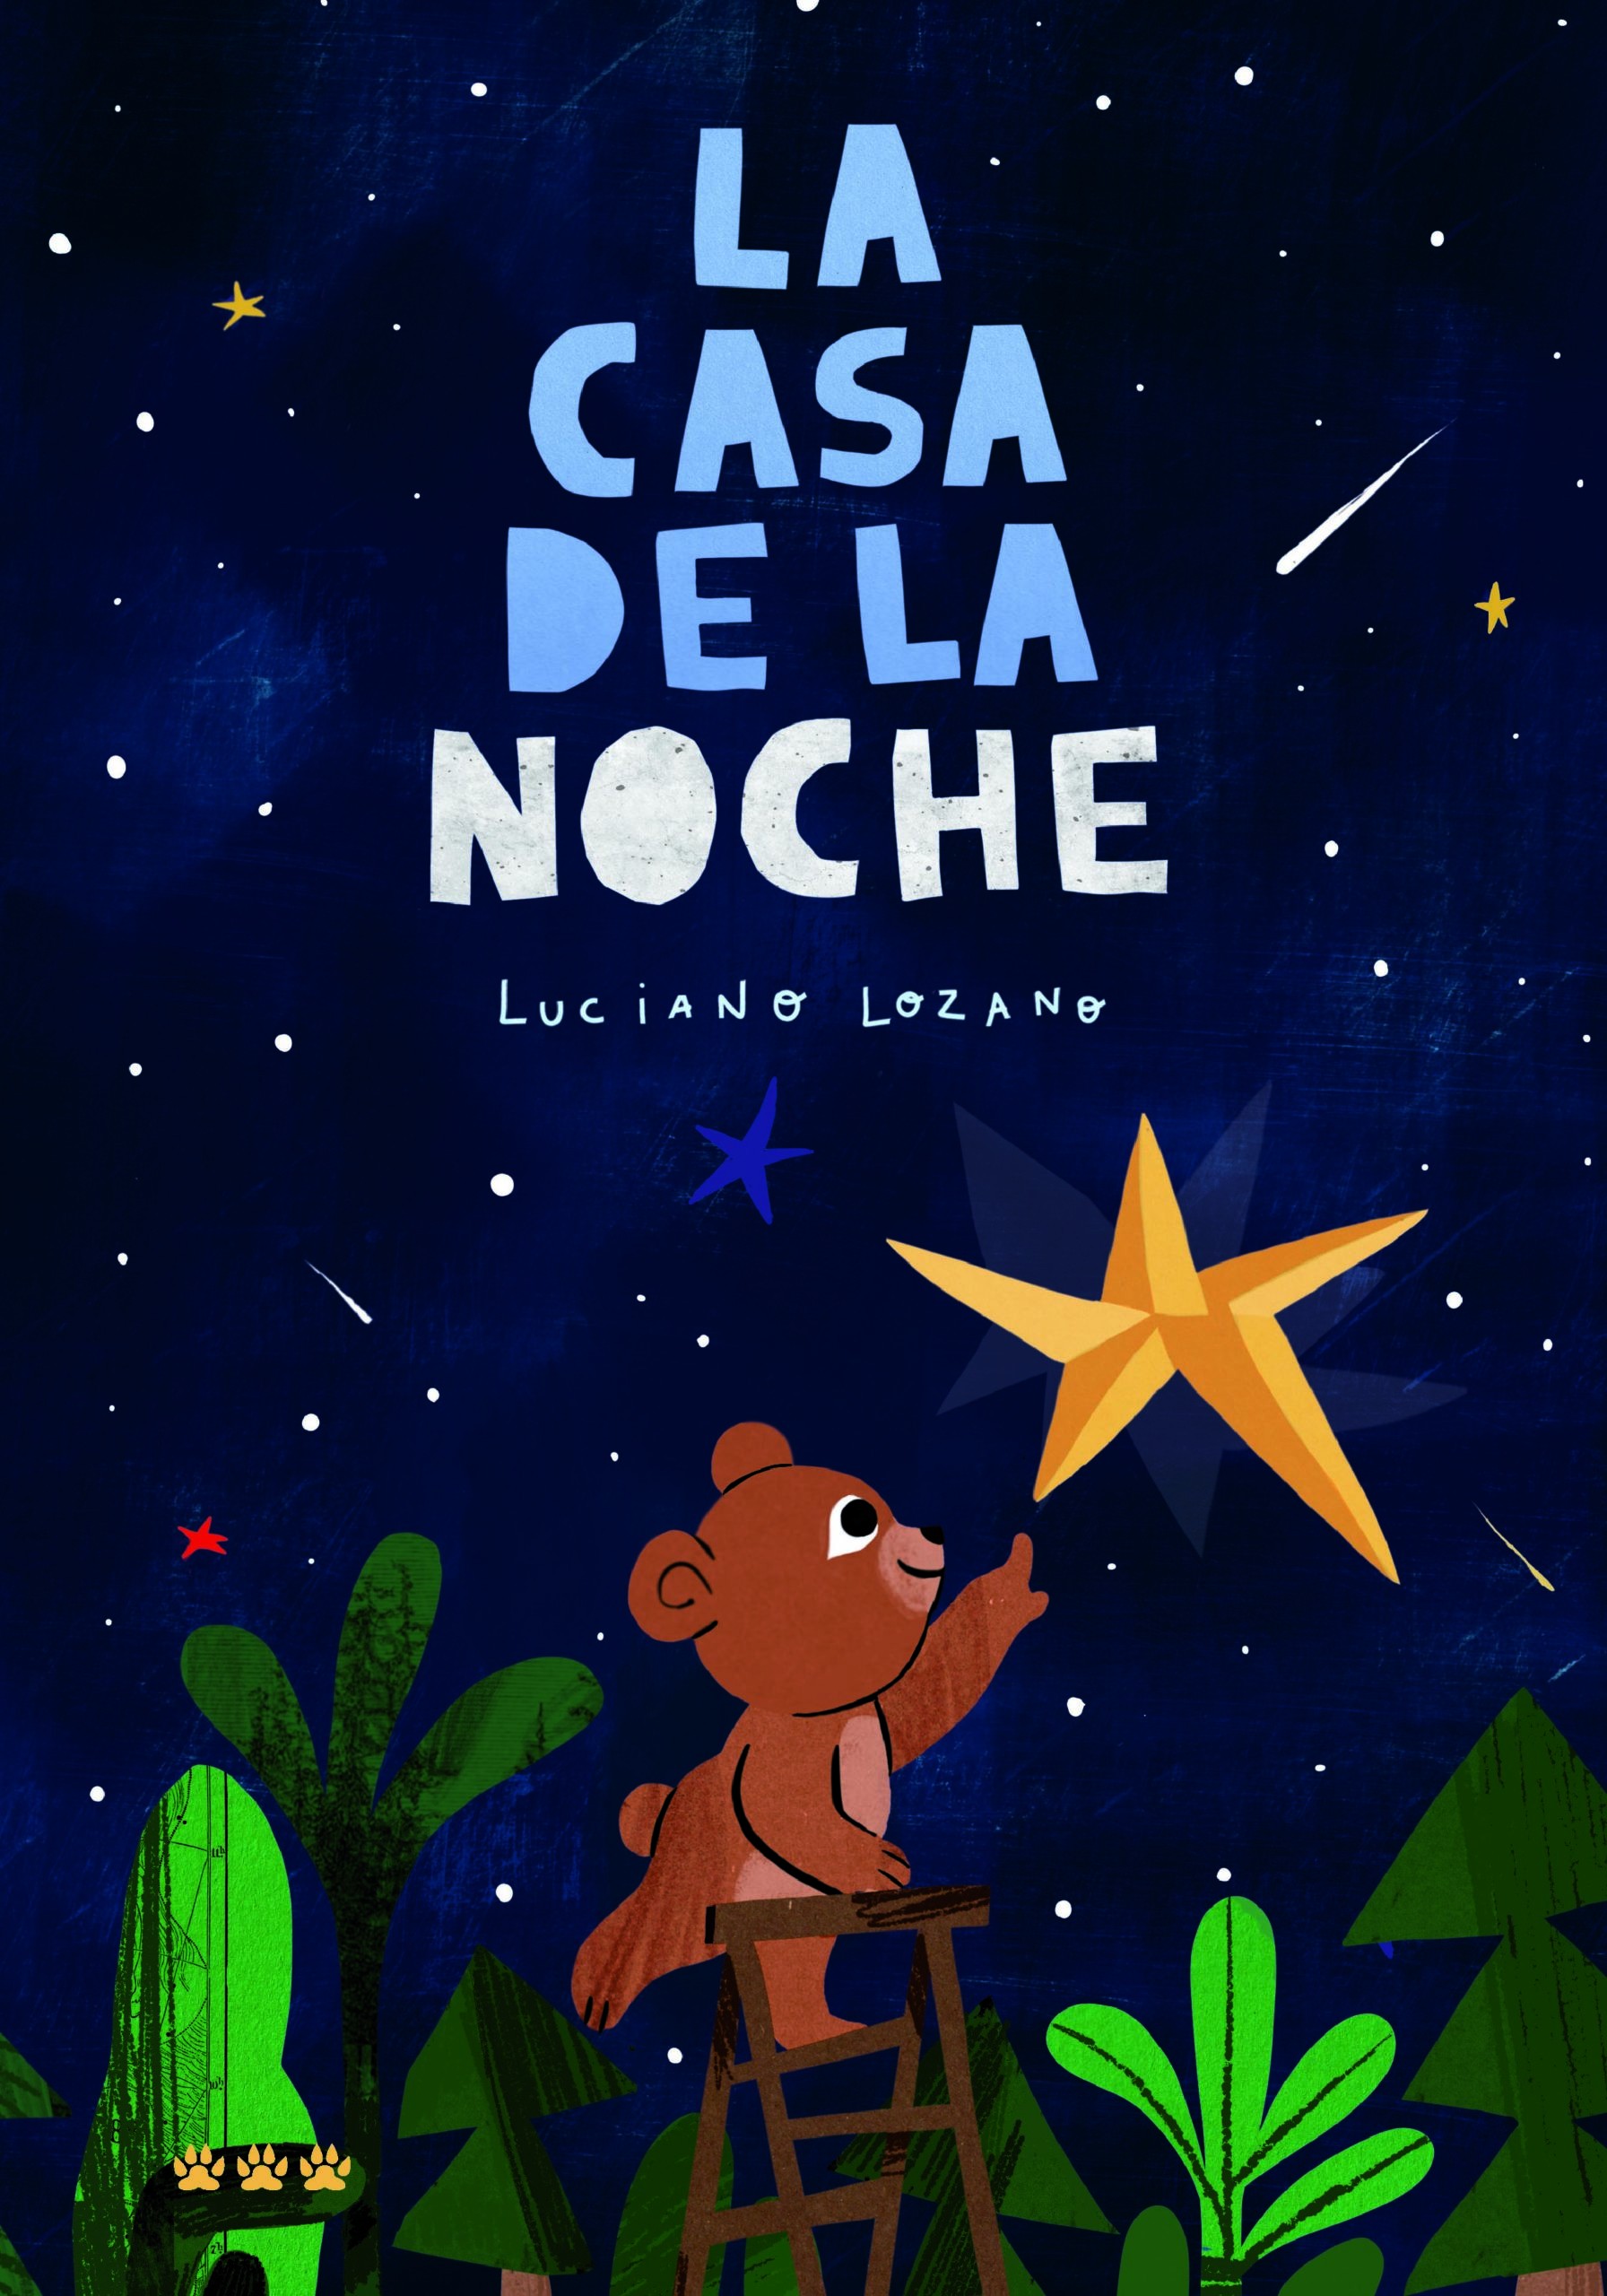 LA CASA DE LA NOCHE, de Luciano Lozano, Álbum ilustrado